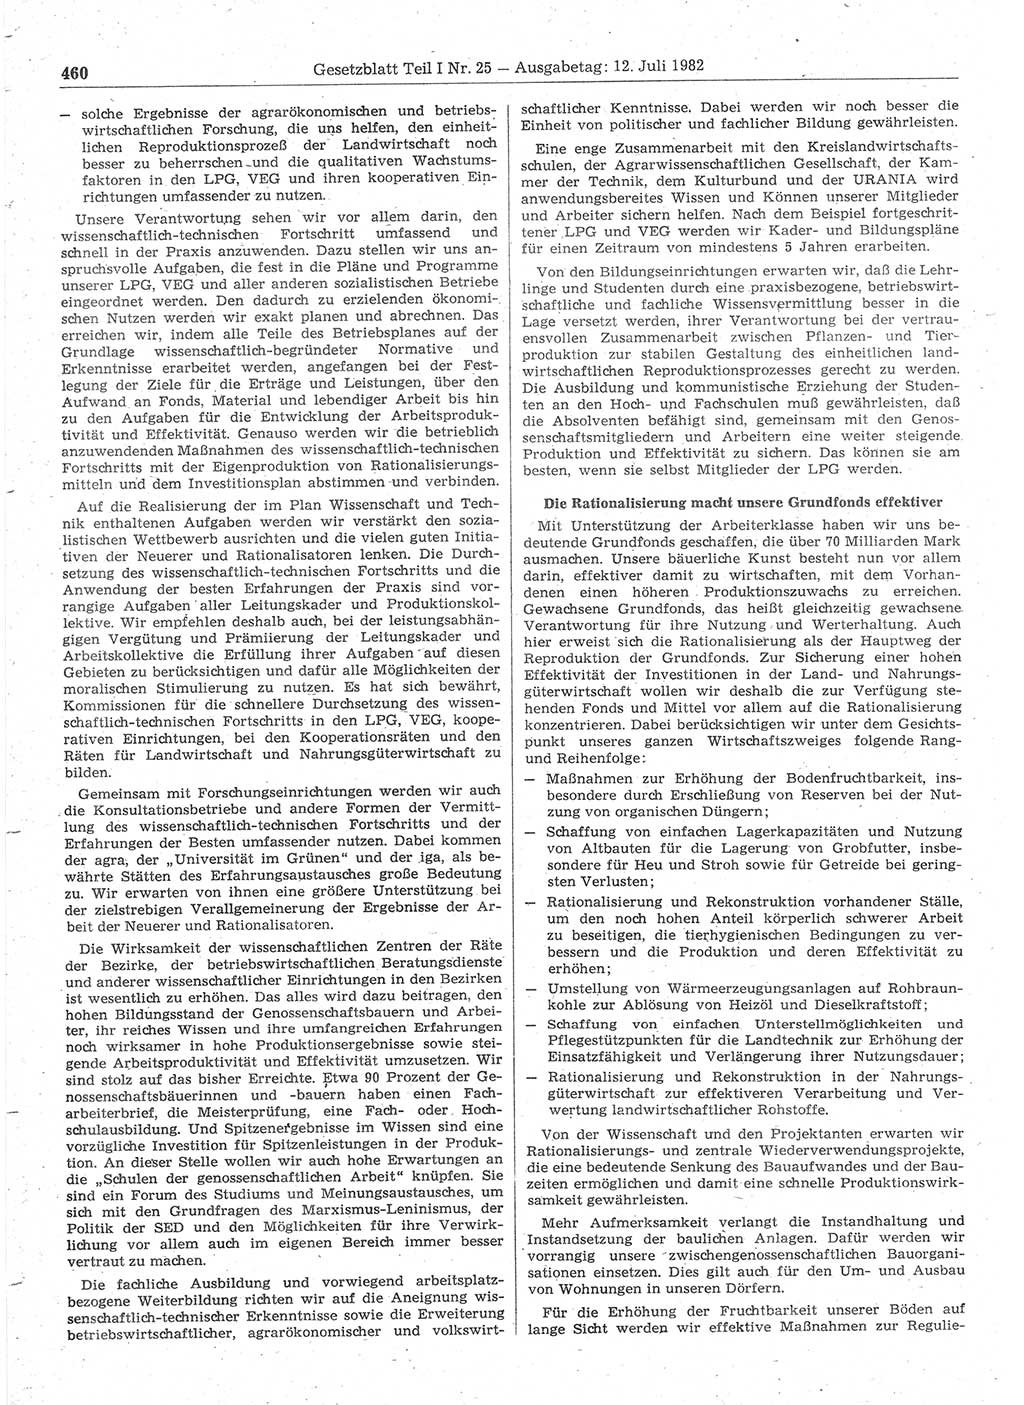 Gesetzblatt (GBl.) der Deutschen Demokratischen Republik (DDR) Teil Ⅰ 1982, Seite 460 (GBl. DDR Ⅰ 1982, S. 460)